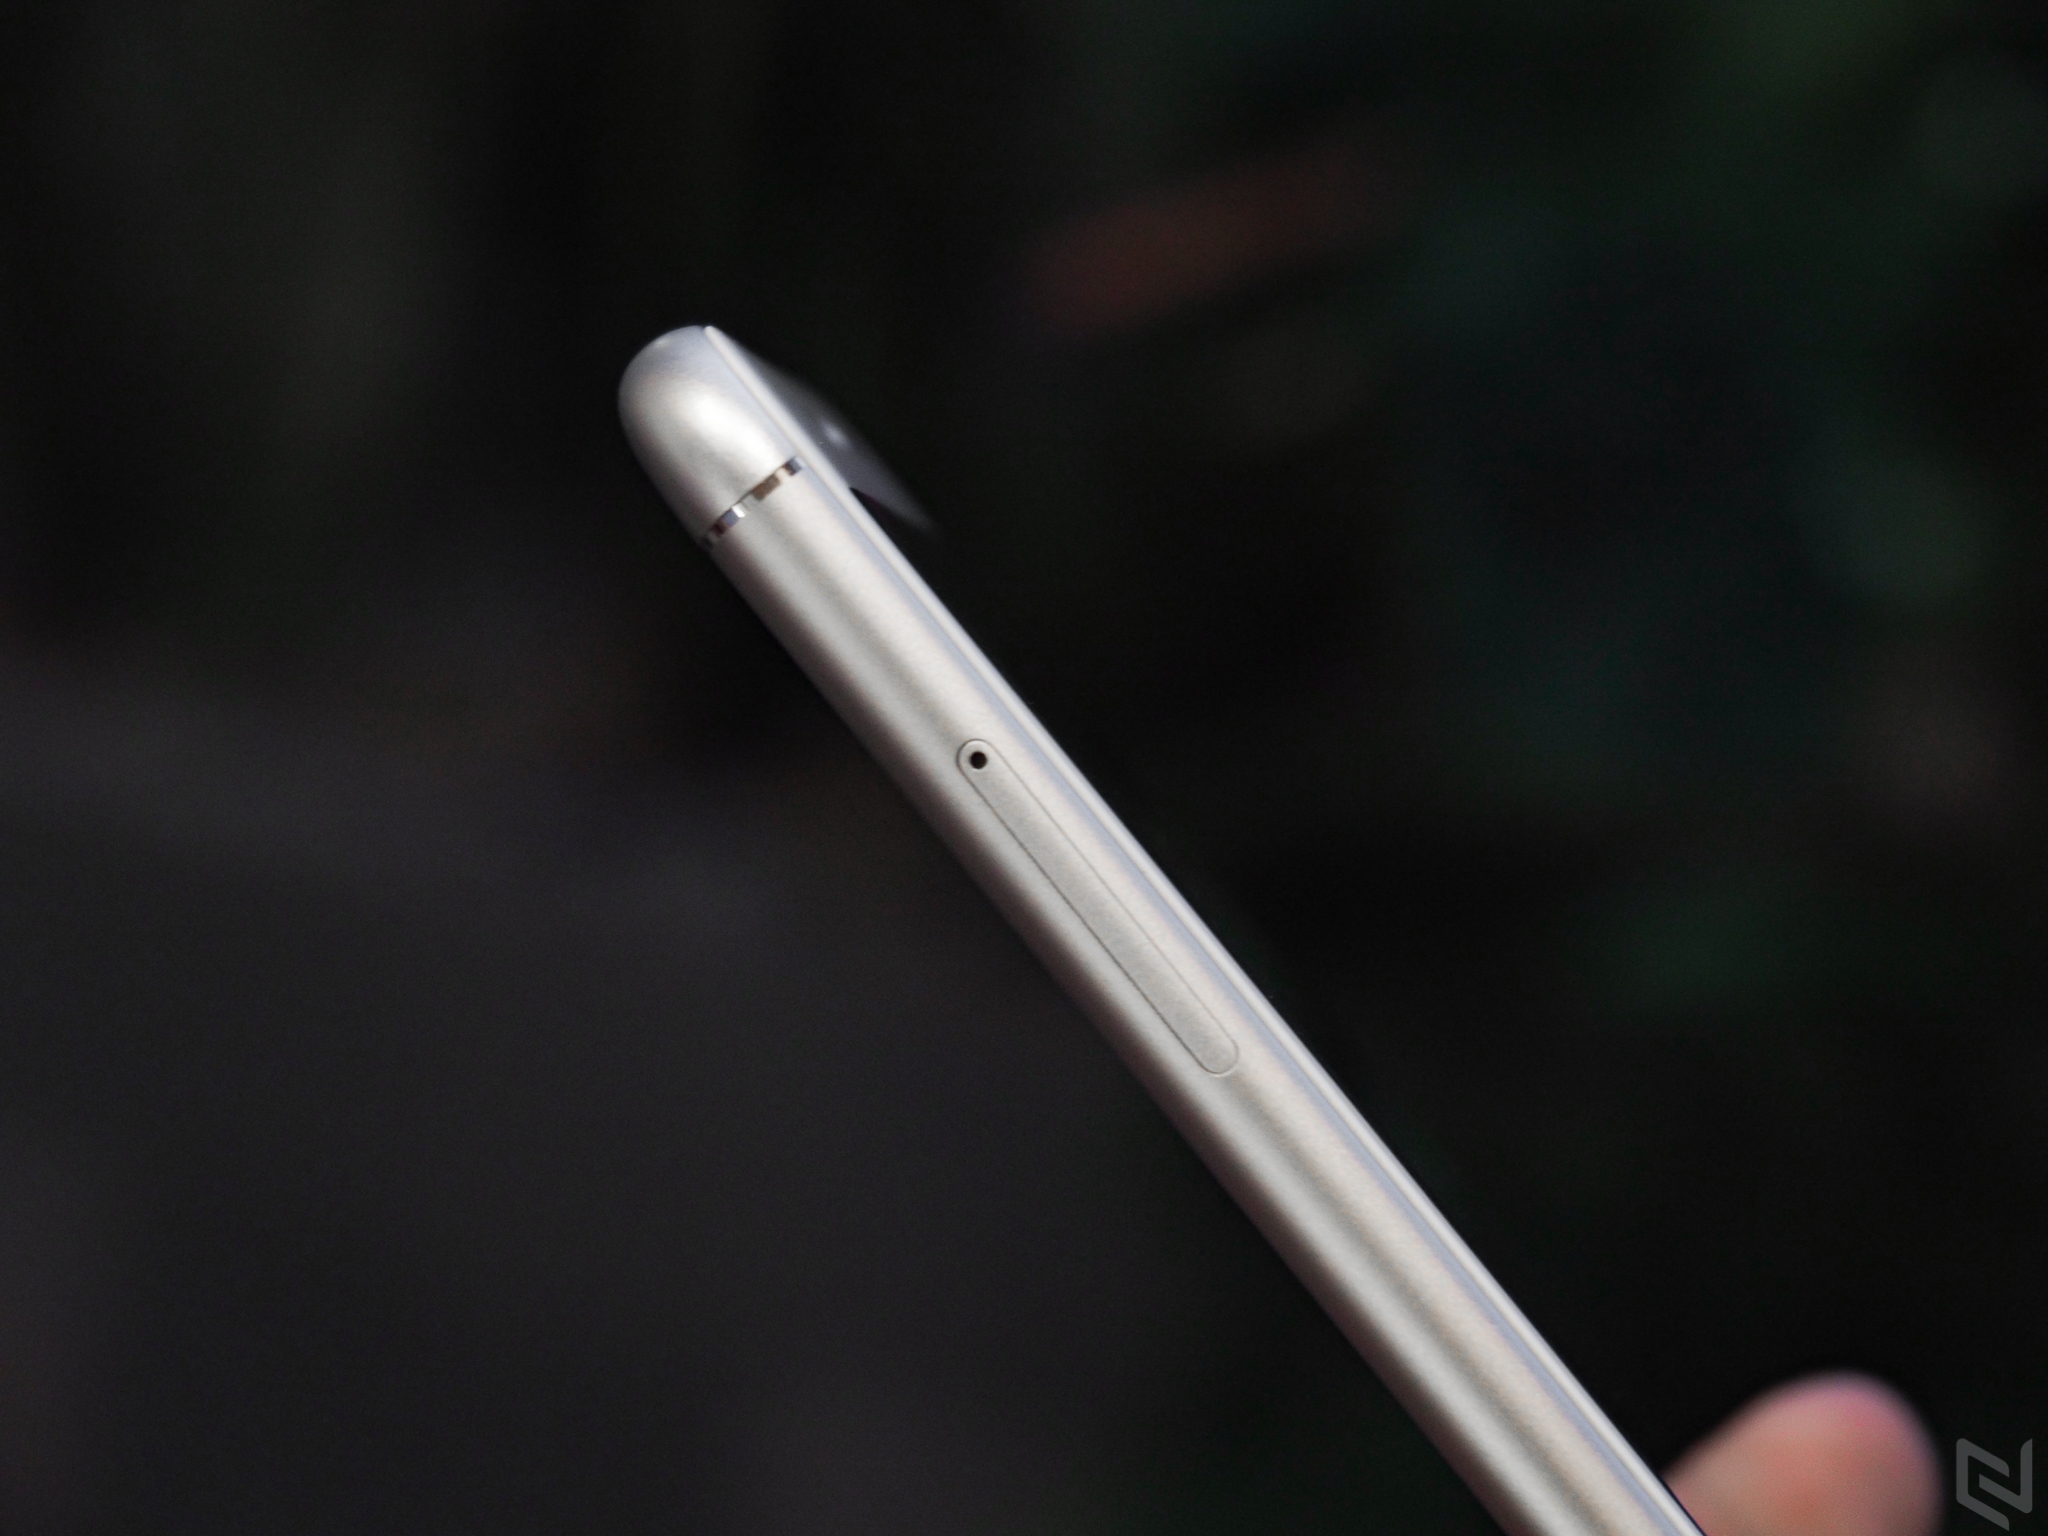 Trên tay ZenFone 3 Max phiên bản màn hình 5.5 inch